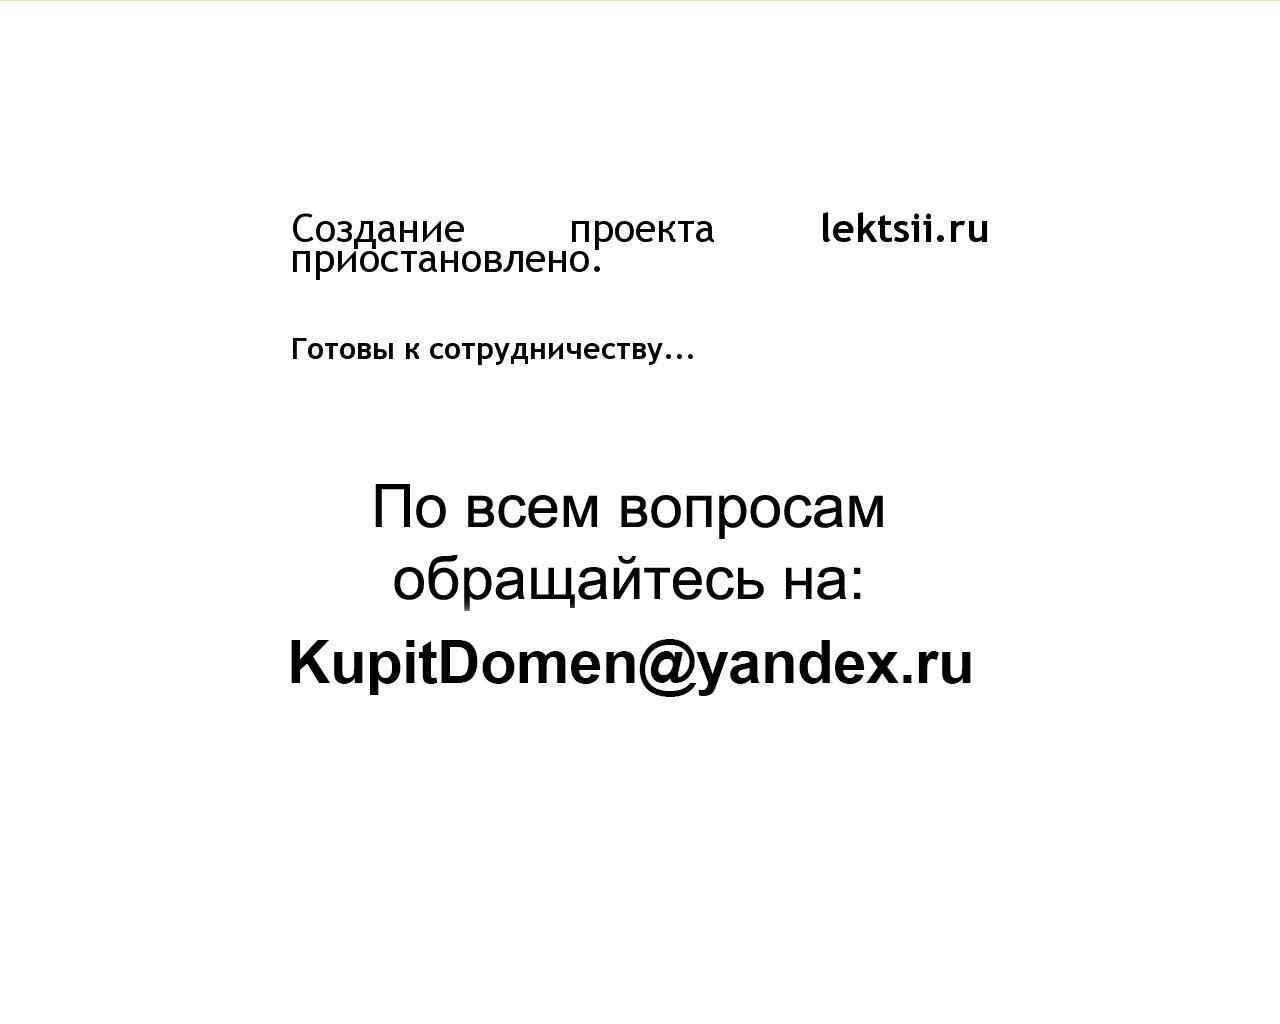 Изображение сайта lektsii.ru в разрешении 1280x1024